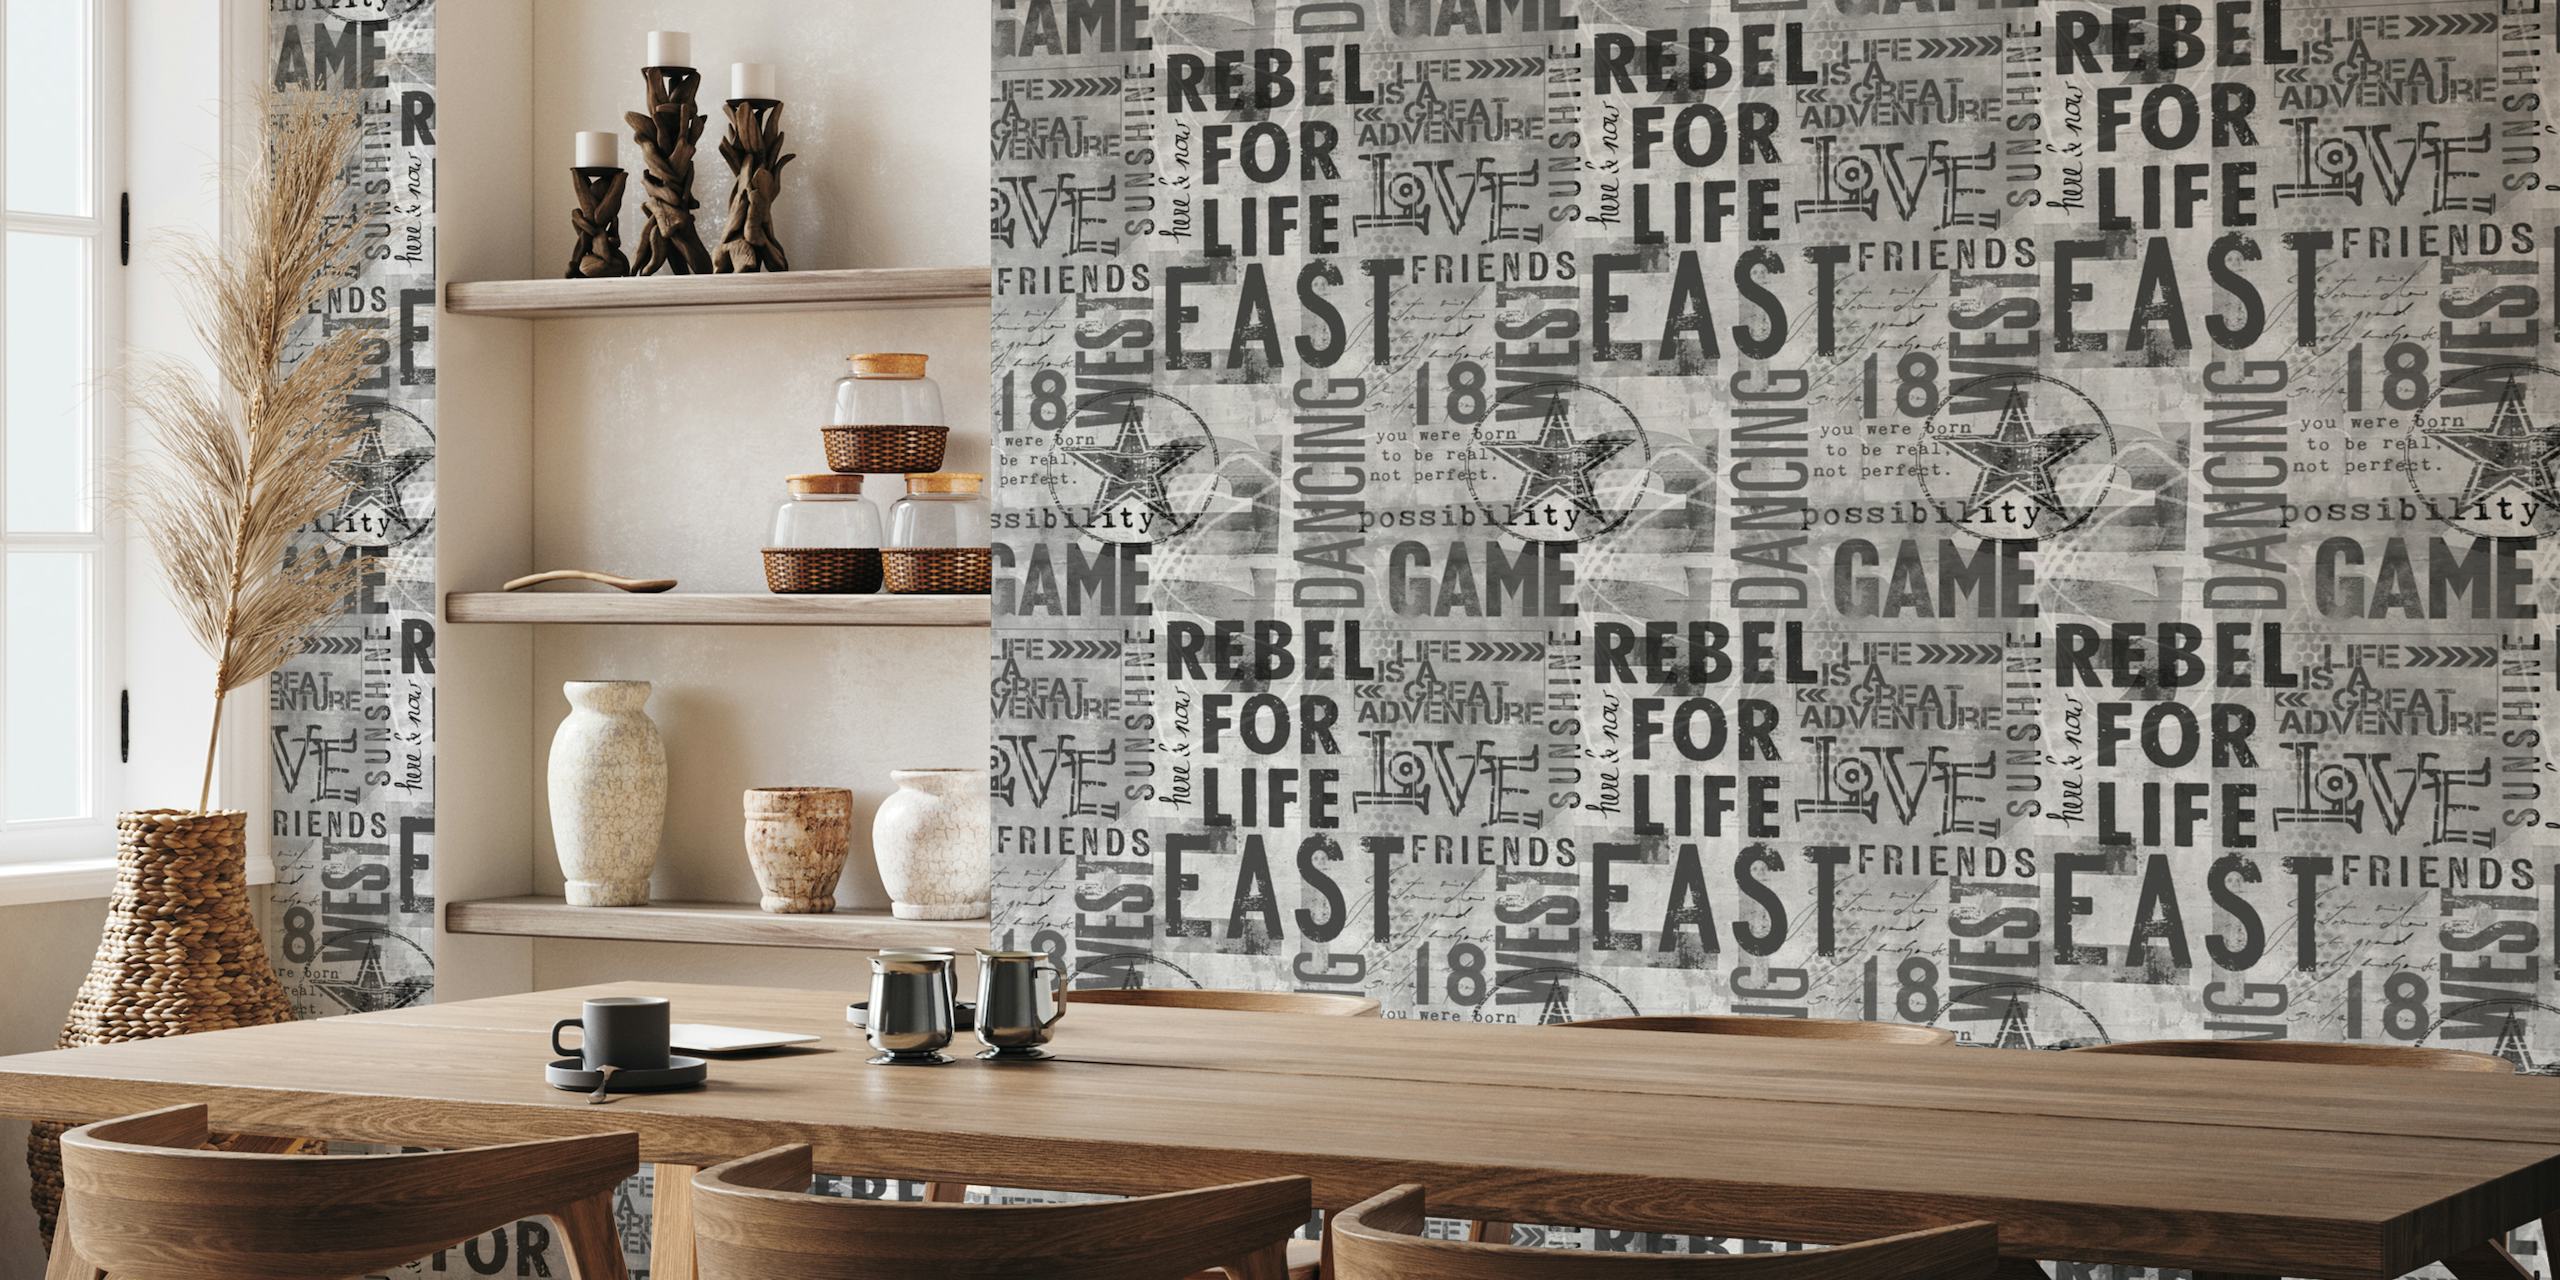 Murale artistico tipografico grunge monocromatico a tema urbano con parole come "REBEL", "GAME", "ADVENTURE" e "FRIENDS".